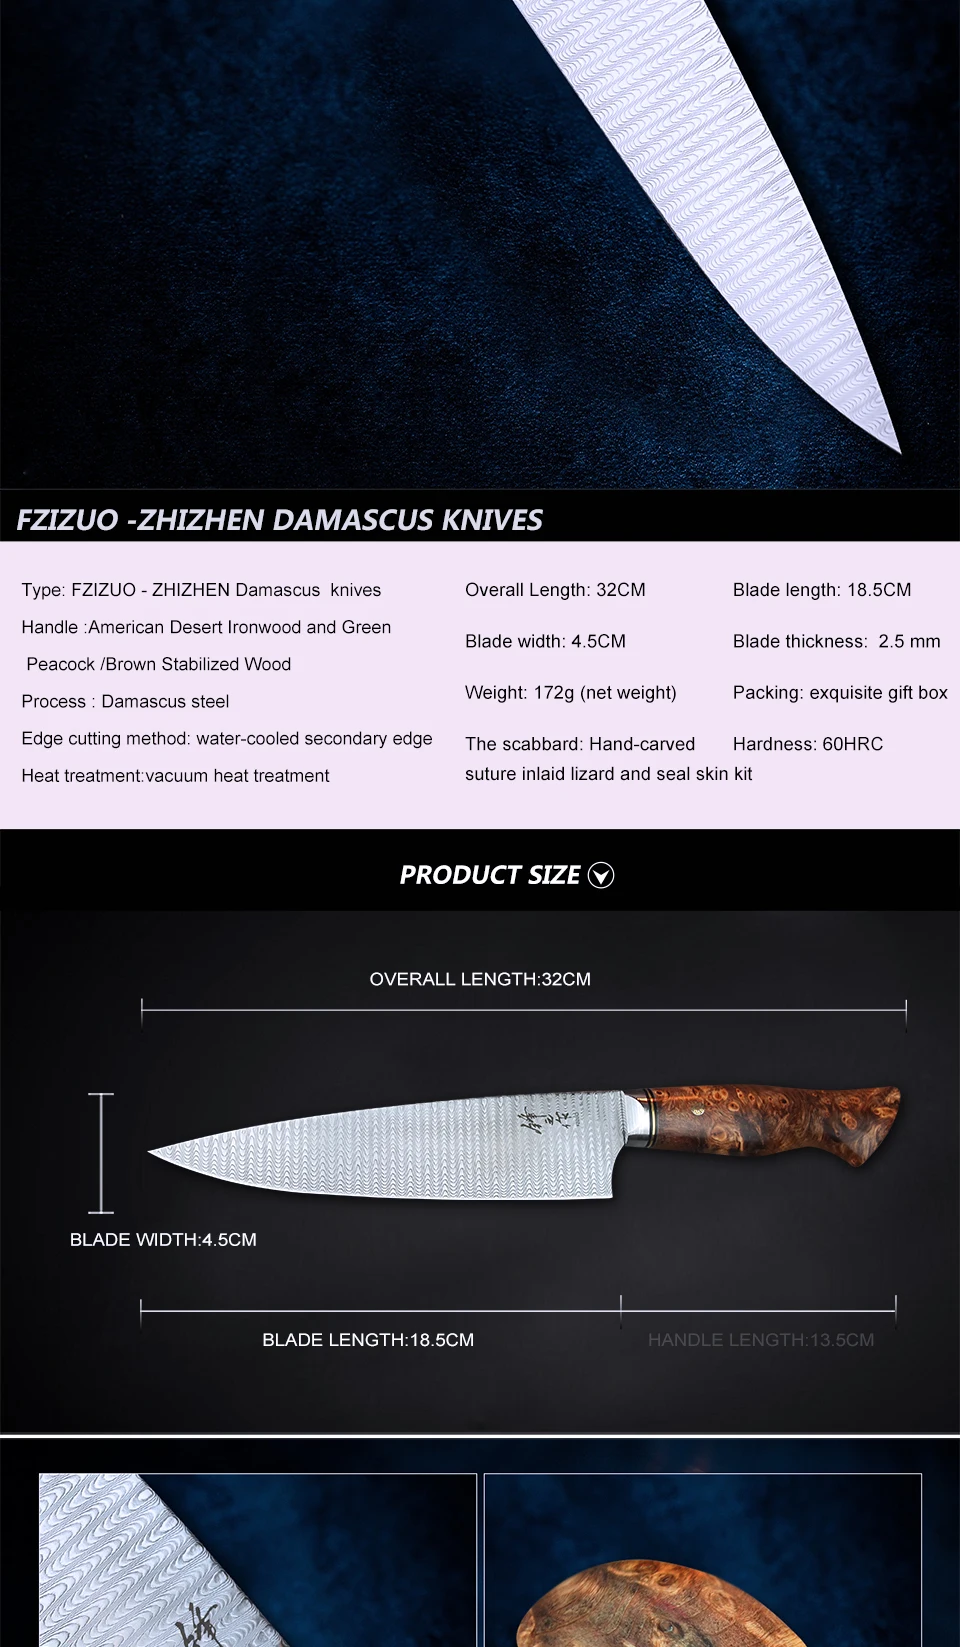 FZIZUO 7 дюймов дамасский нож шеф-повара японские ножи Gyuto Профессиональные кухонные инструменты для приготовления пищи ручной работы резные кожаные узлы 60HRC